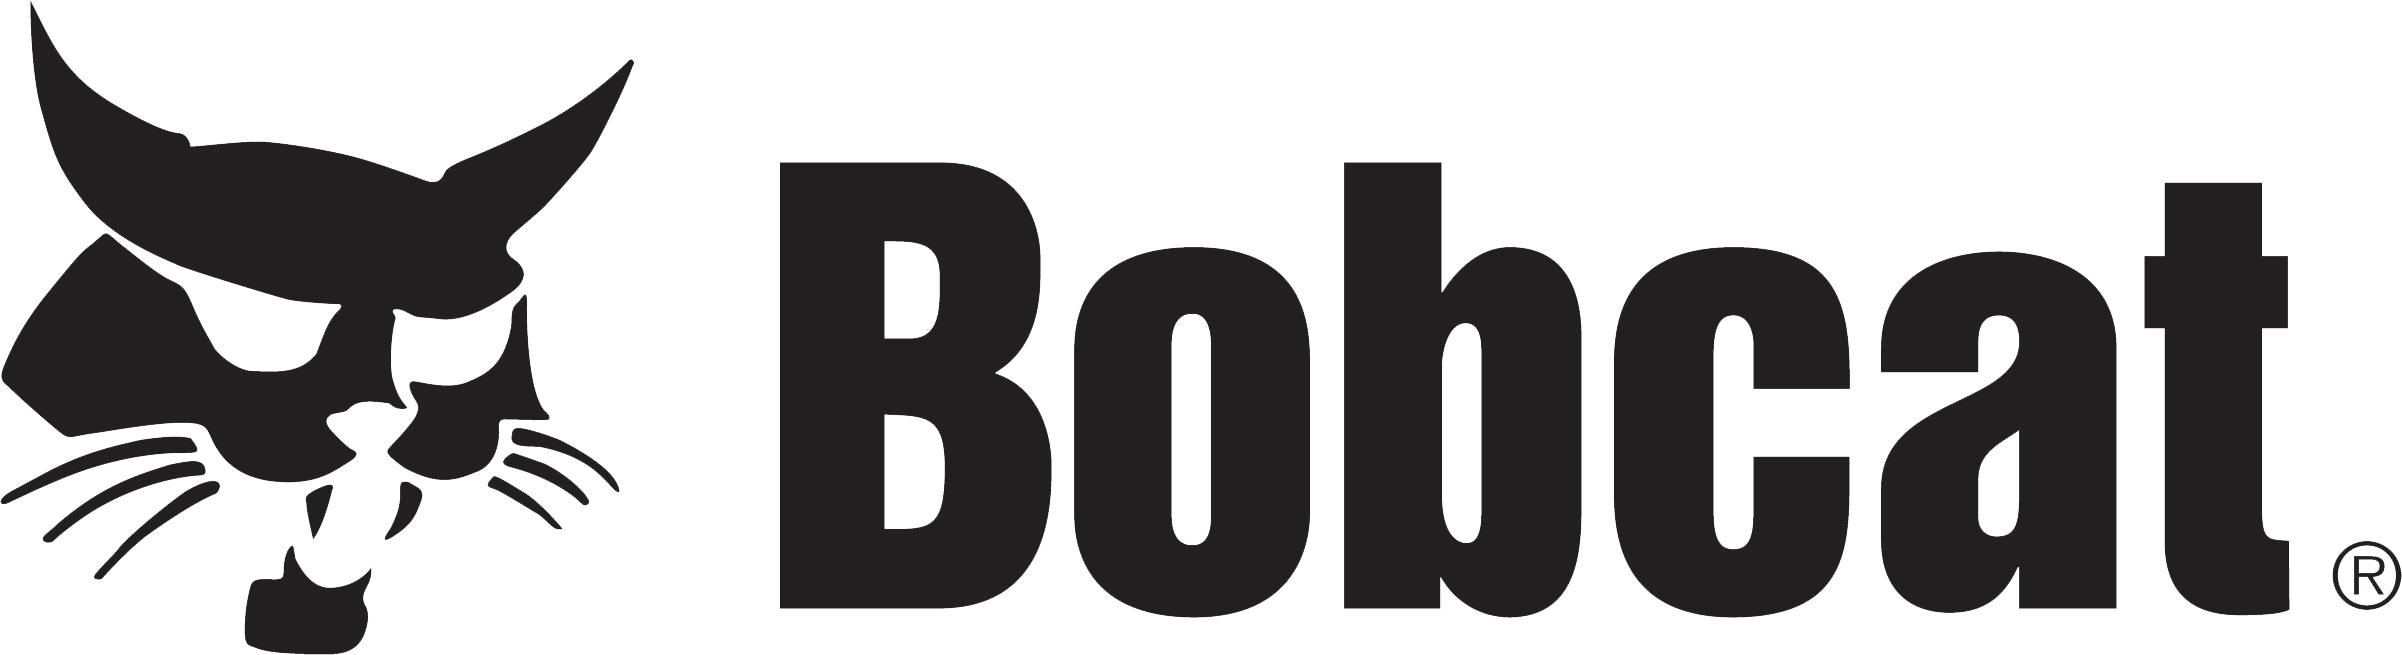 bobcat_logo_black_transp.png